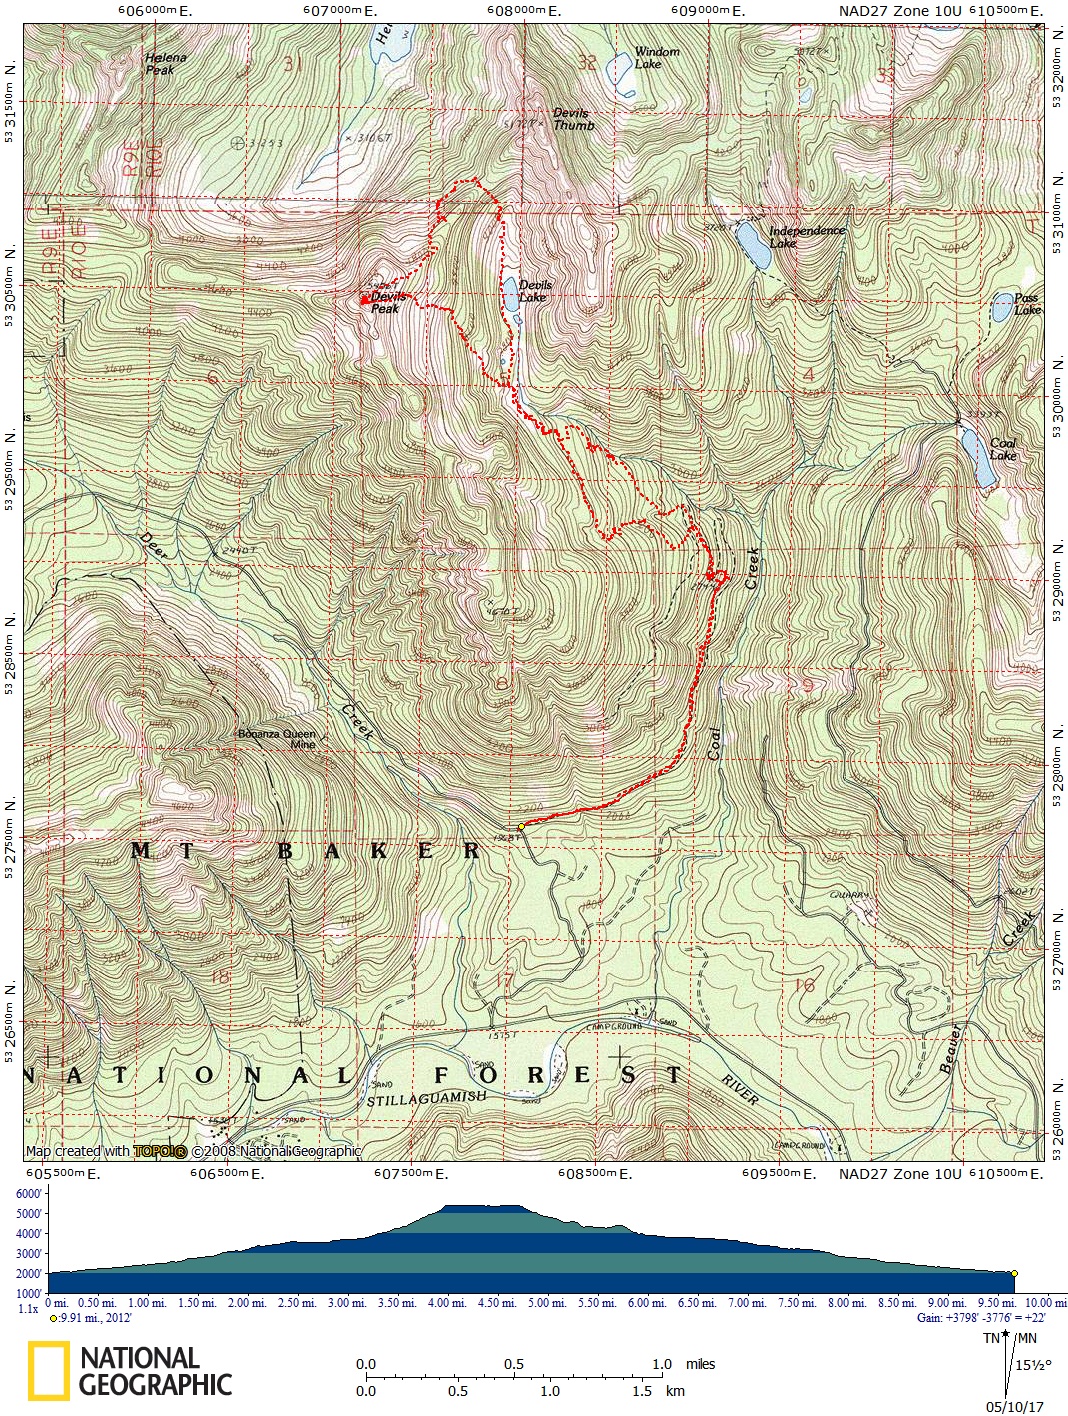 Devil's Peak Route Map by Brett Dyson